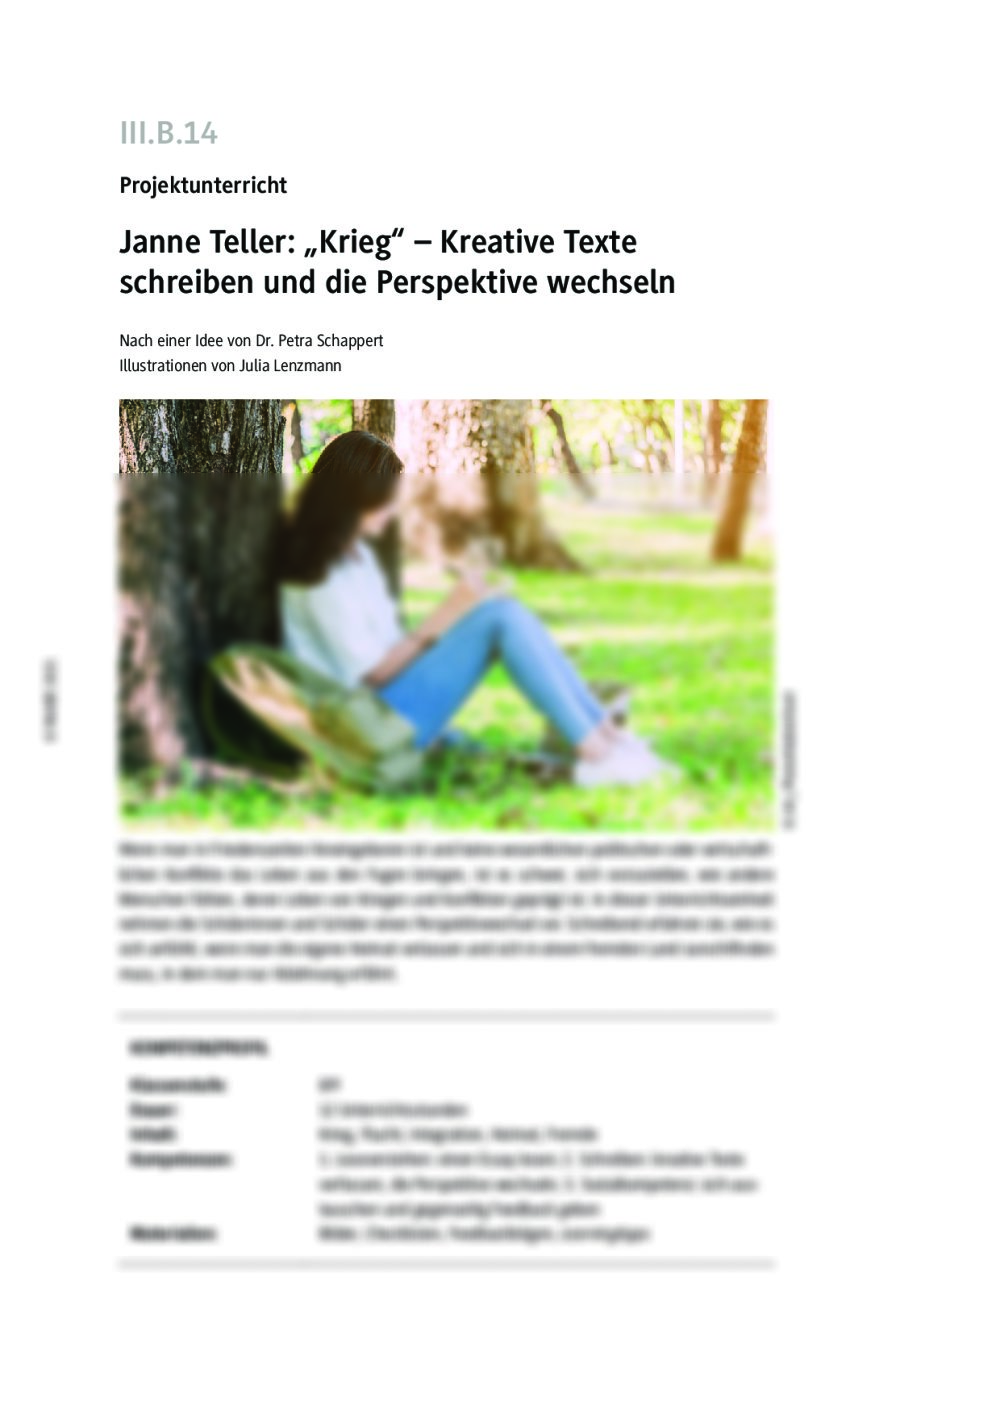 Janne Teller: "Krieg" – Kreative Texte schreiben - Seite 1